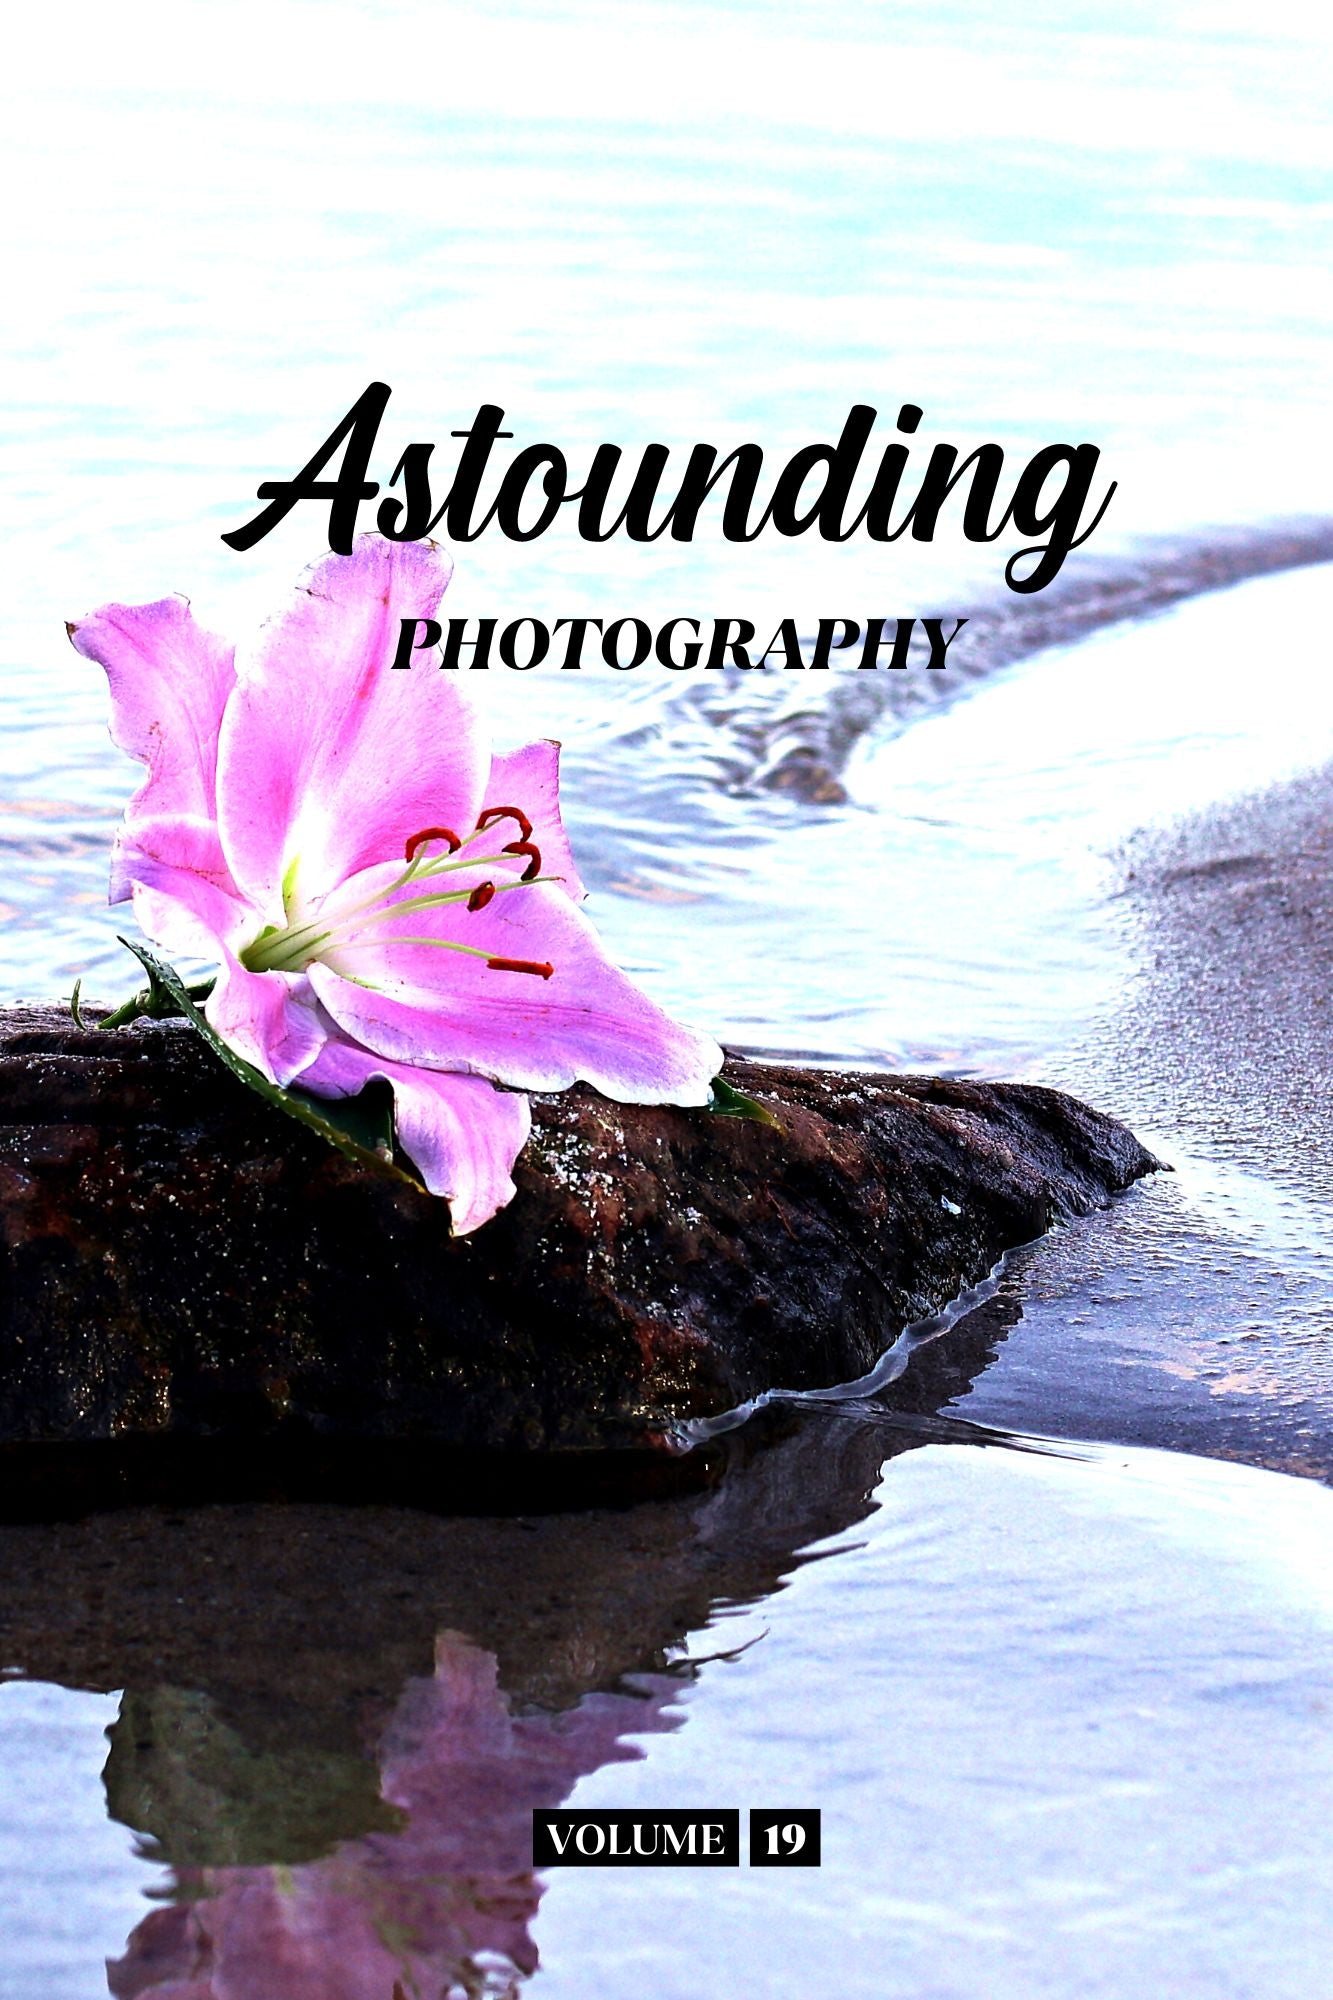 Astounding Photography Volume 19 (Physical Book Pre-Order)